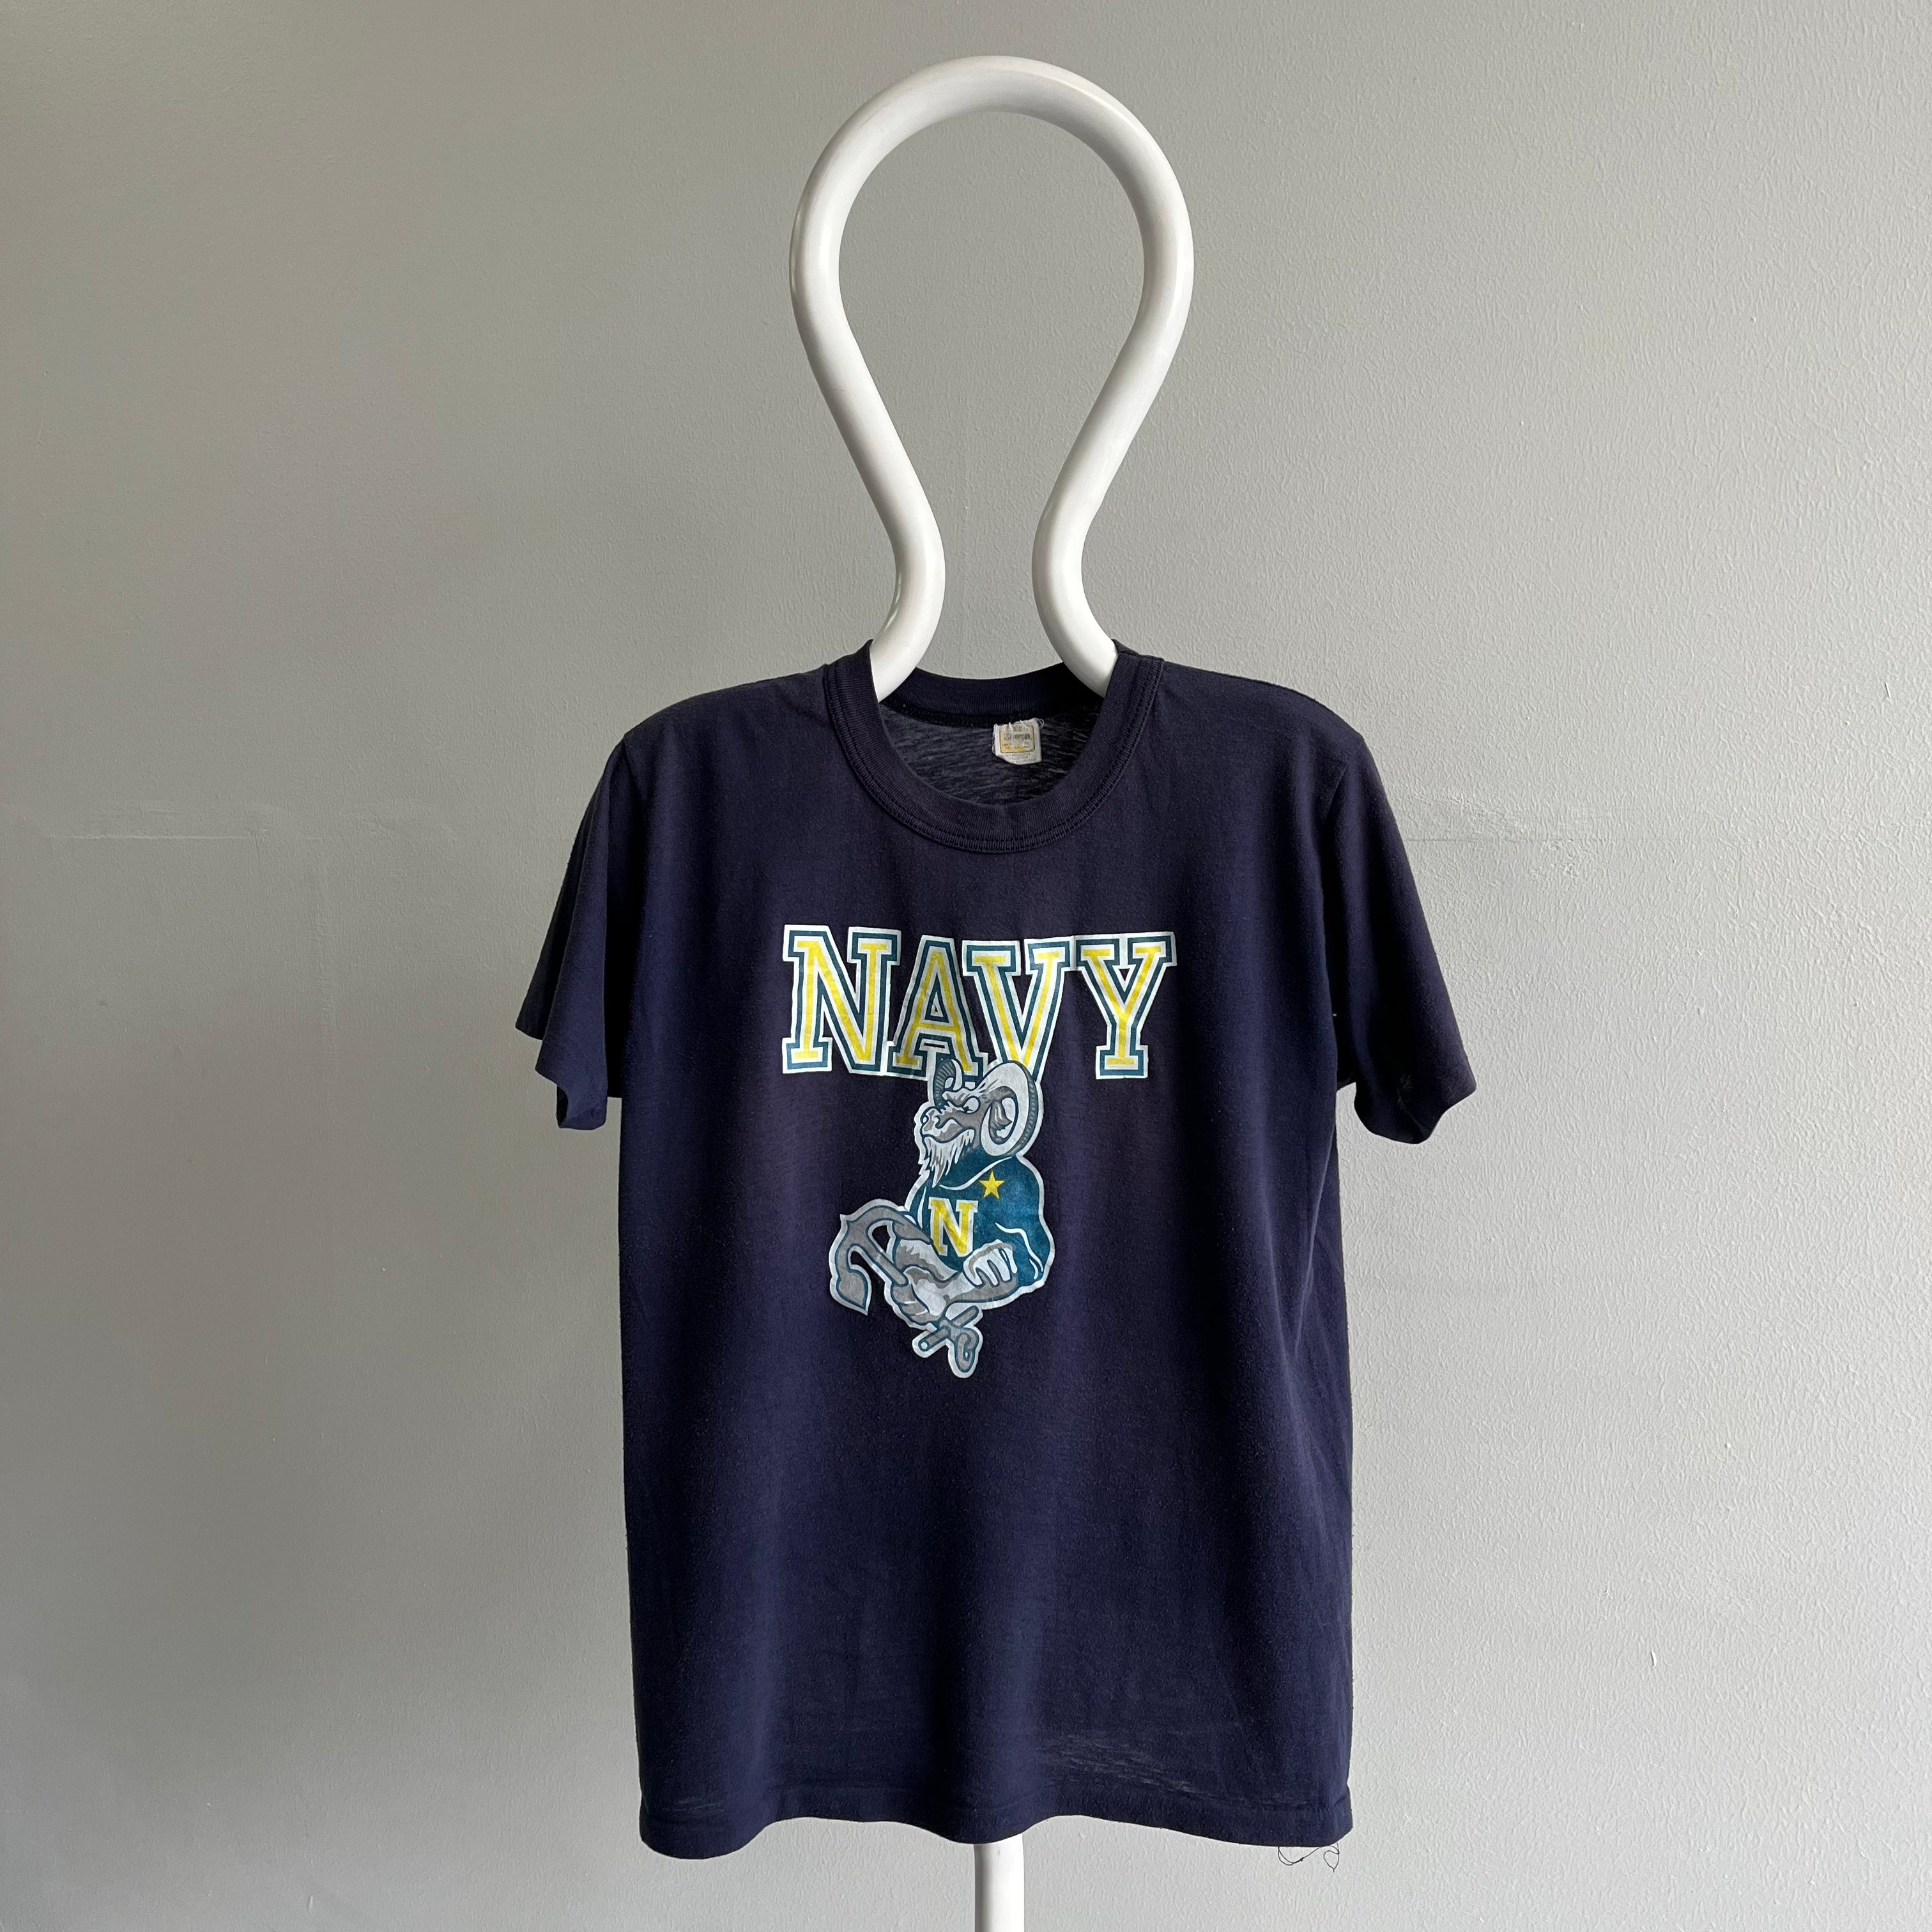 1970s United States Navy T-Shirt by Velva Sheen